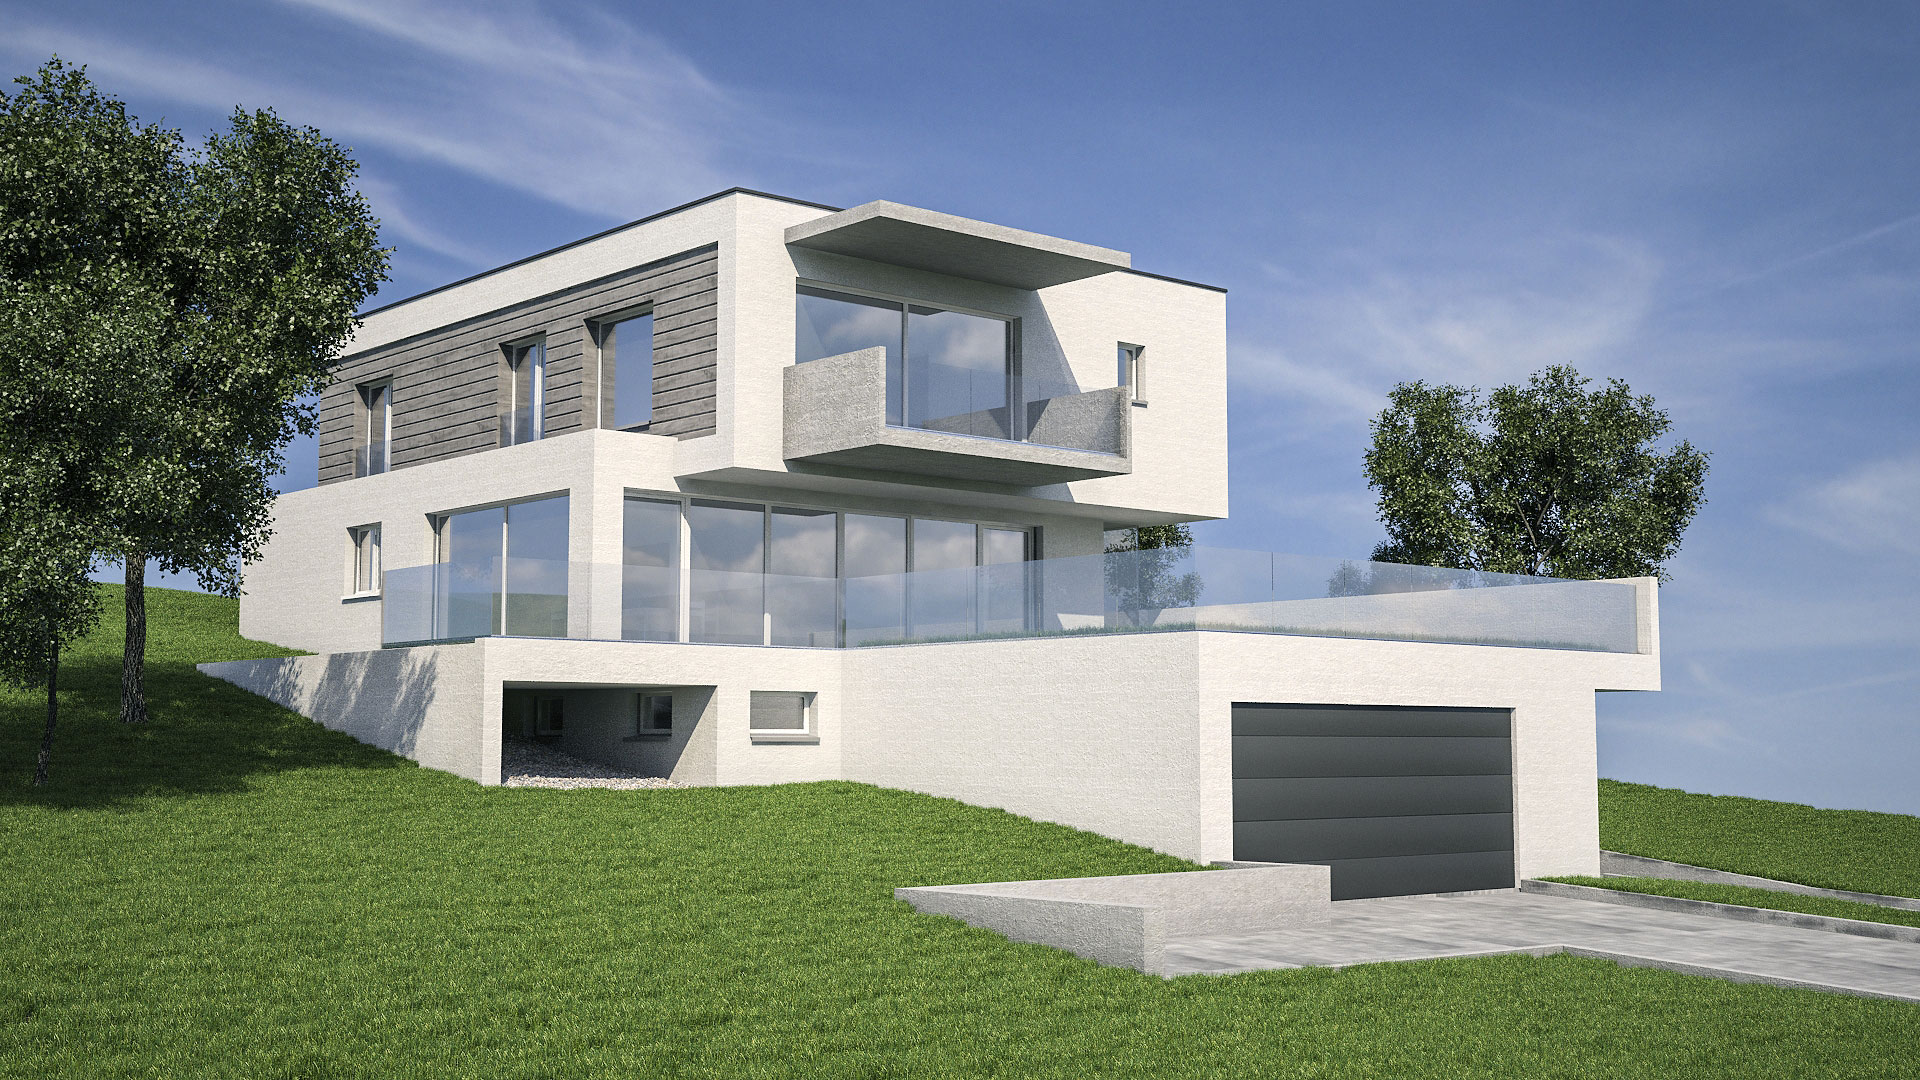 C3 Concept, visualisation 3D à Bulle. Villa à Riaz extérieurs